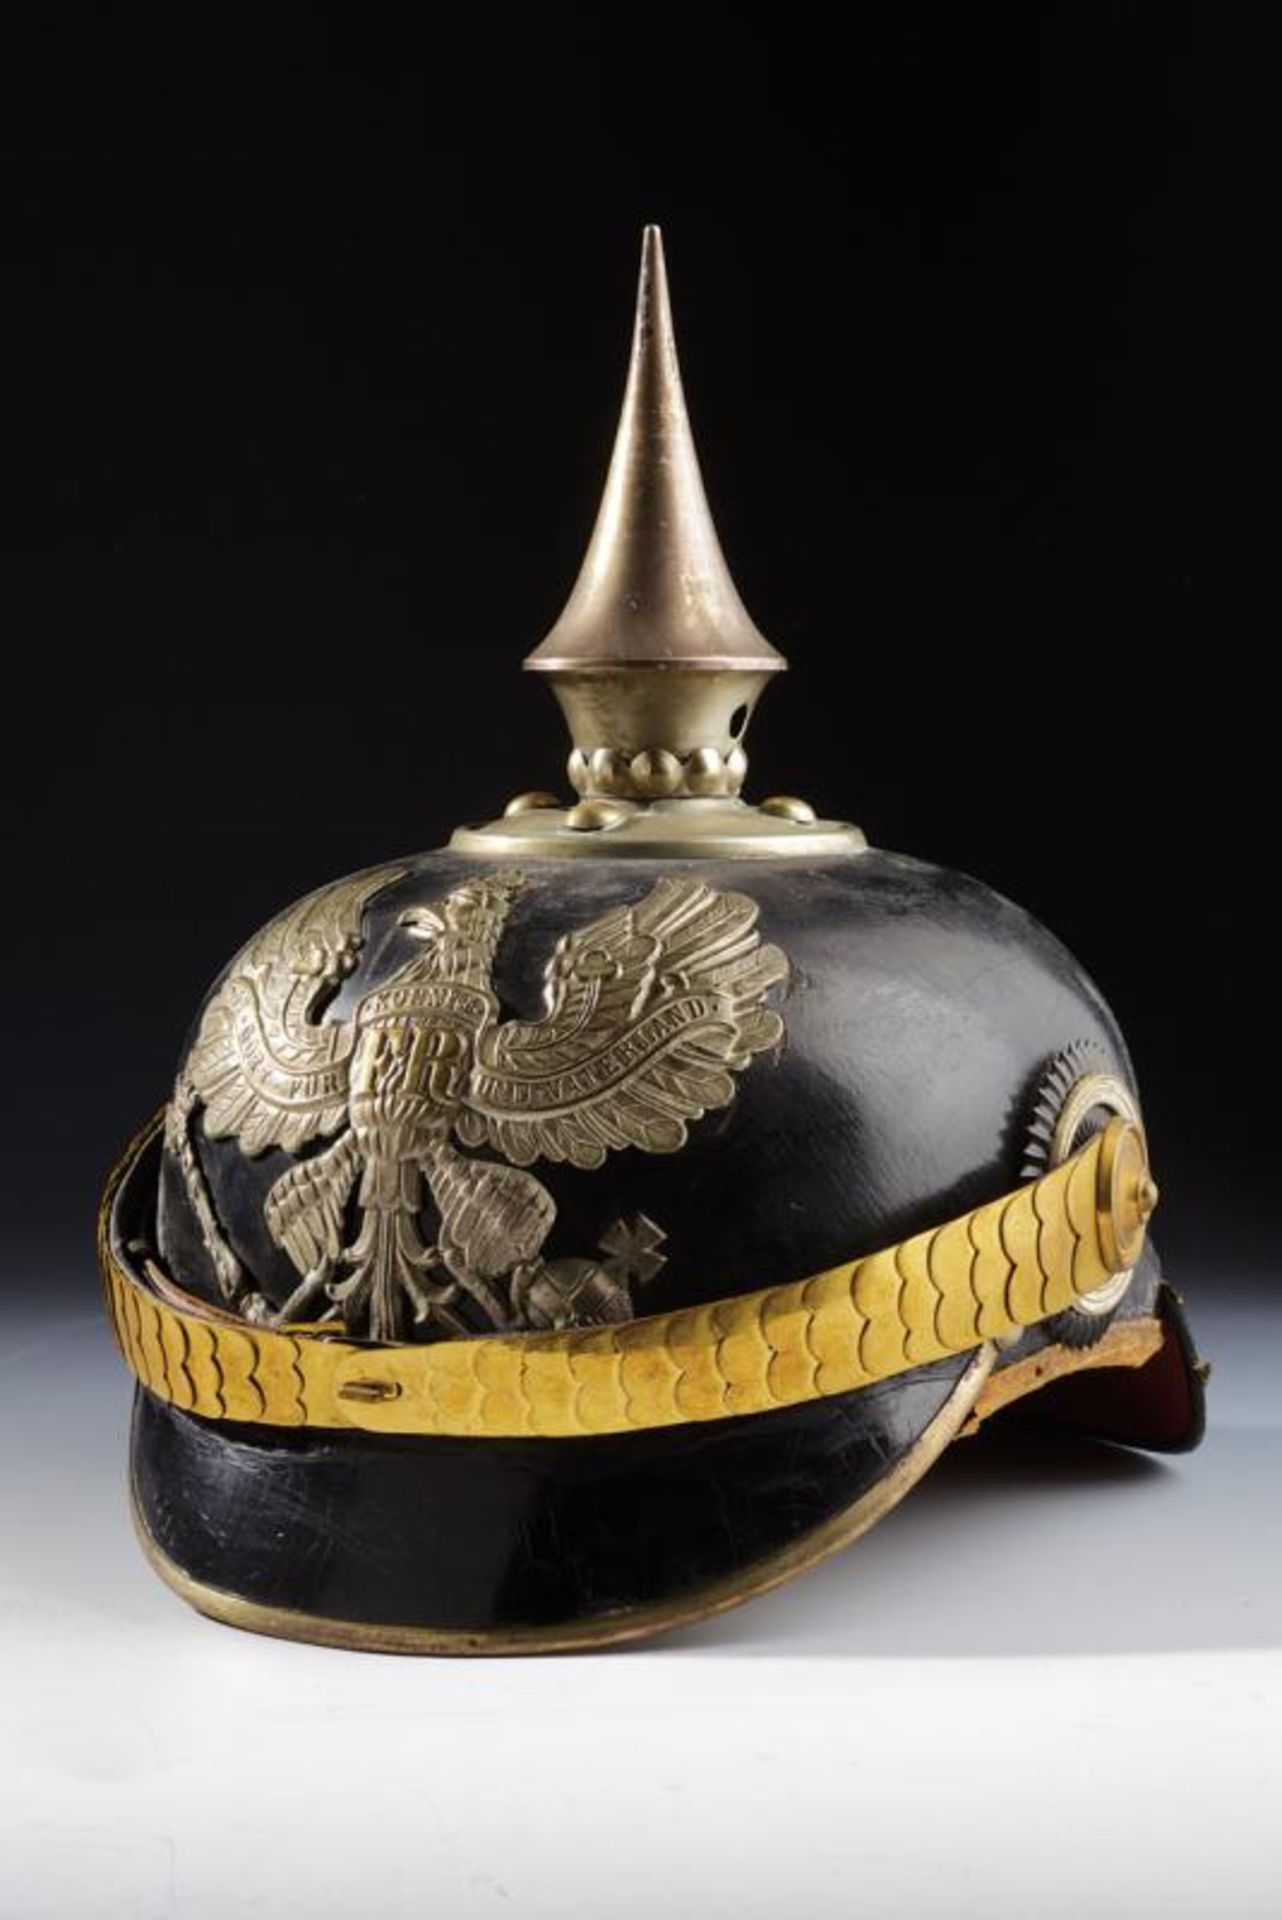 A pioneer officer's helmet